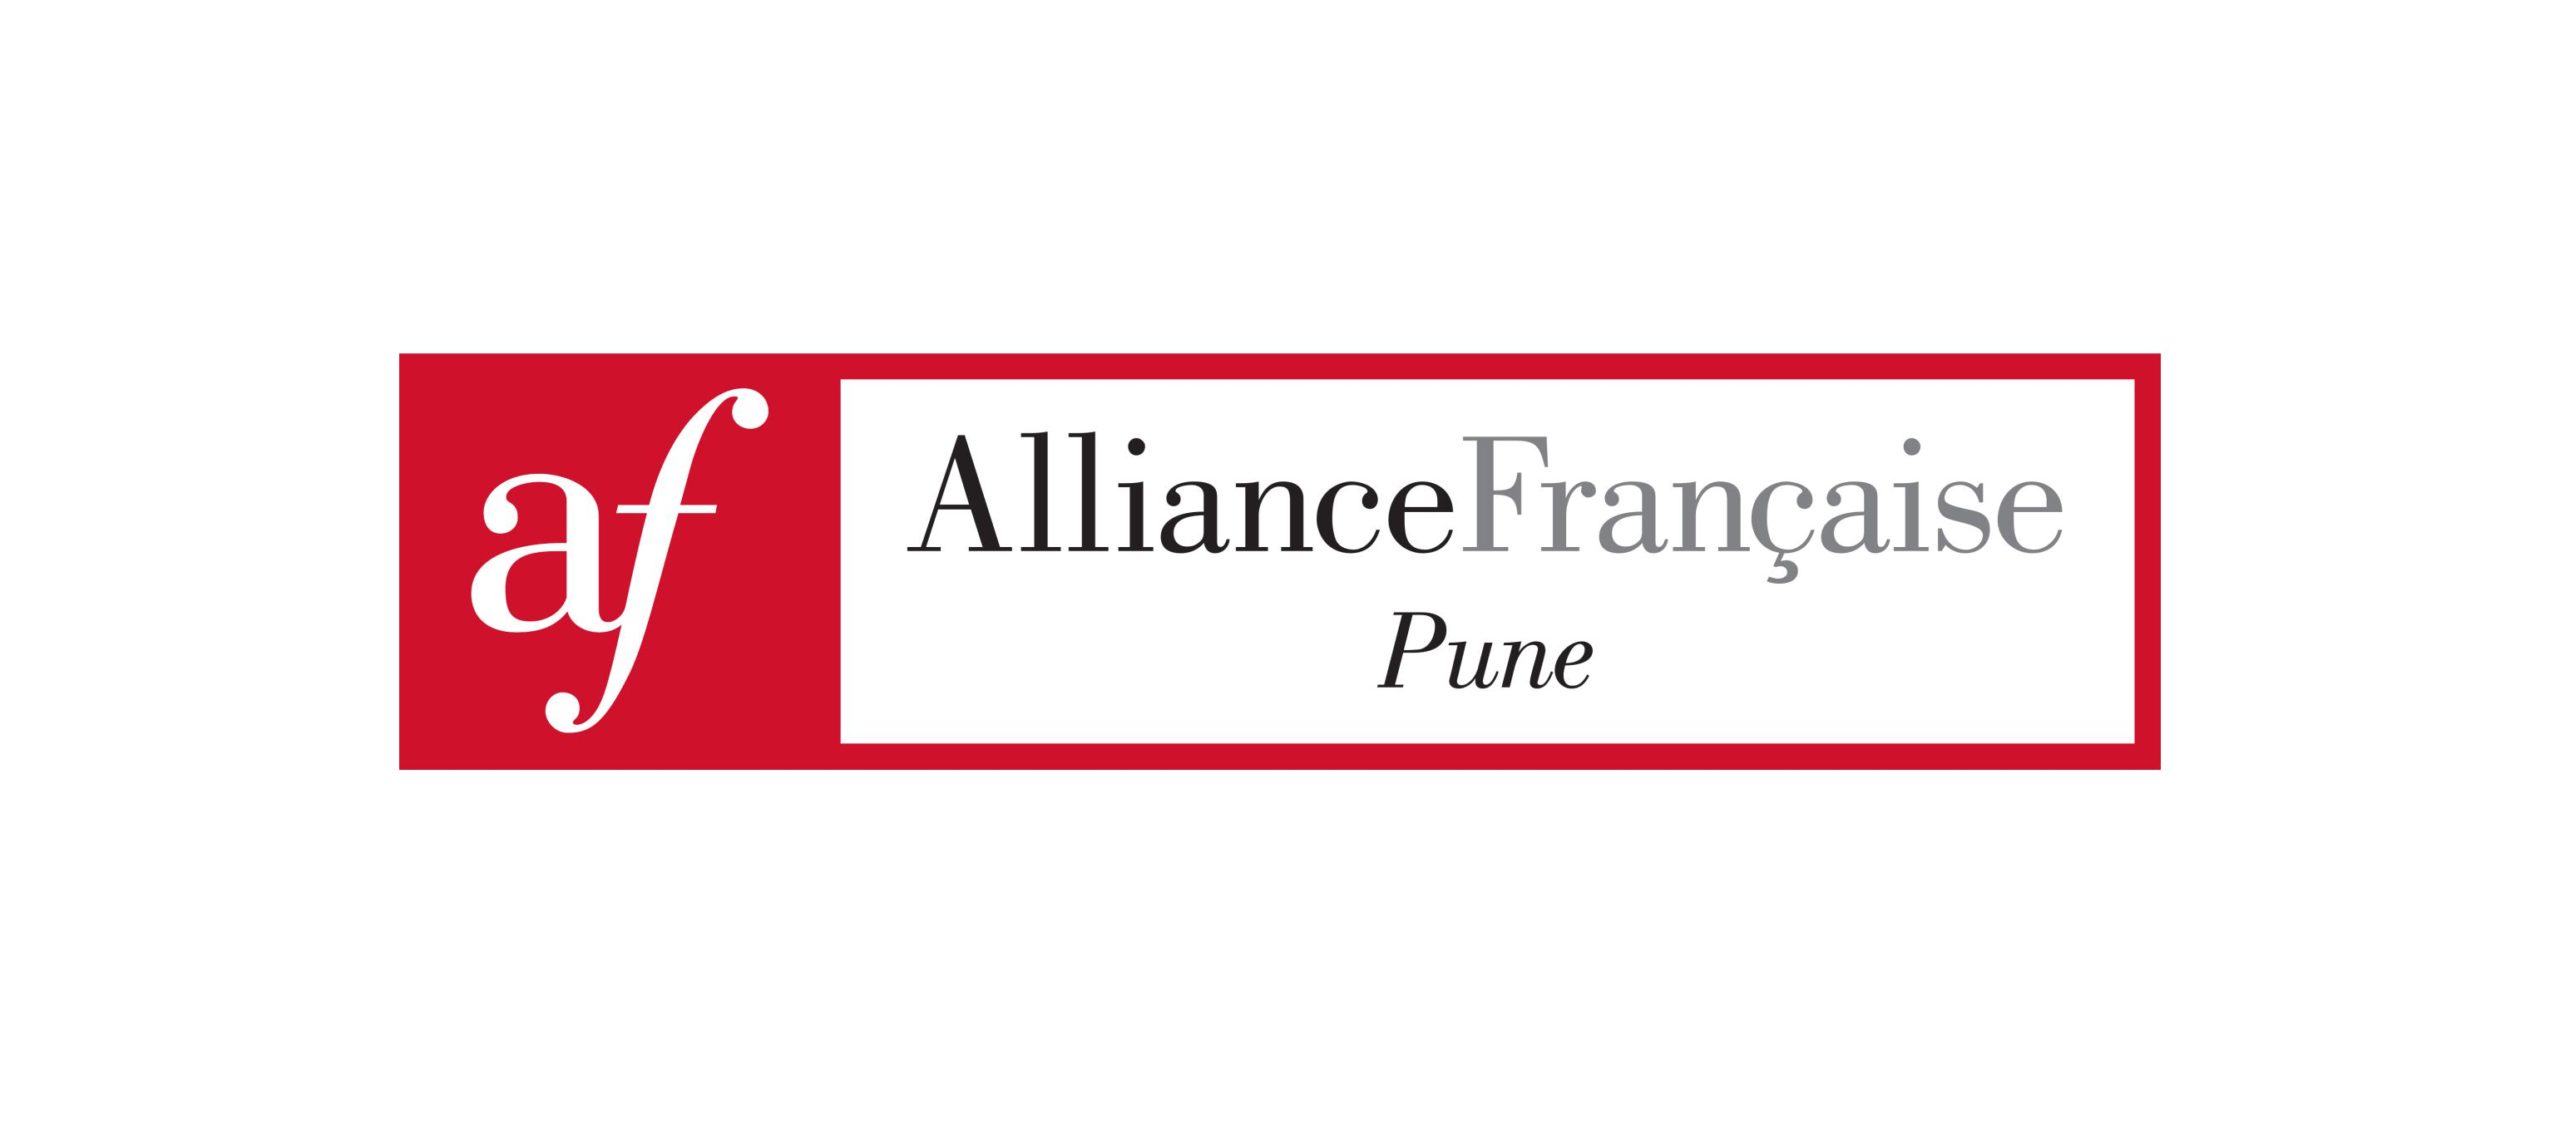 Реклама Альянс Франсез. Трио альянс